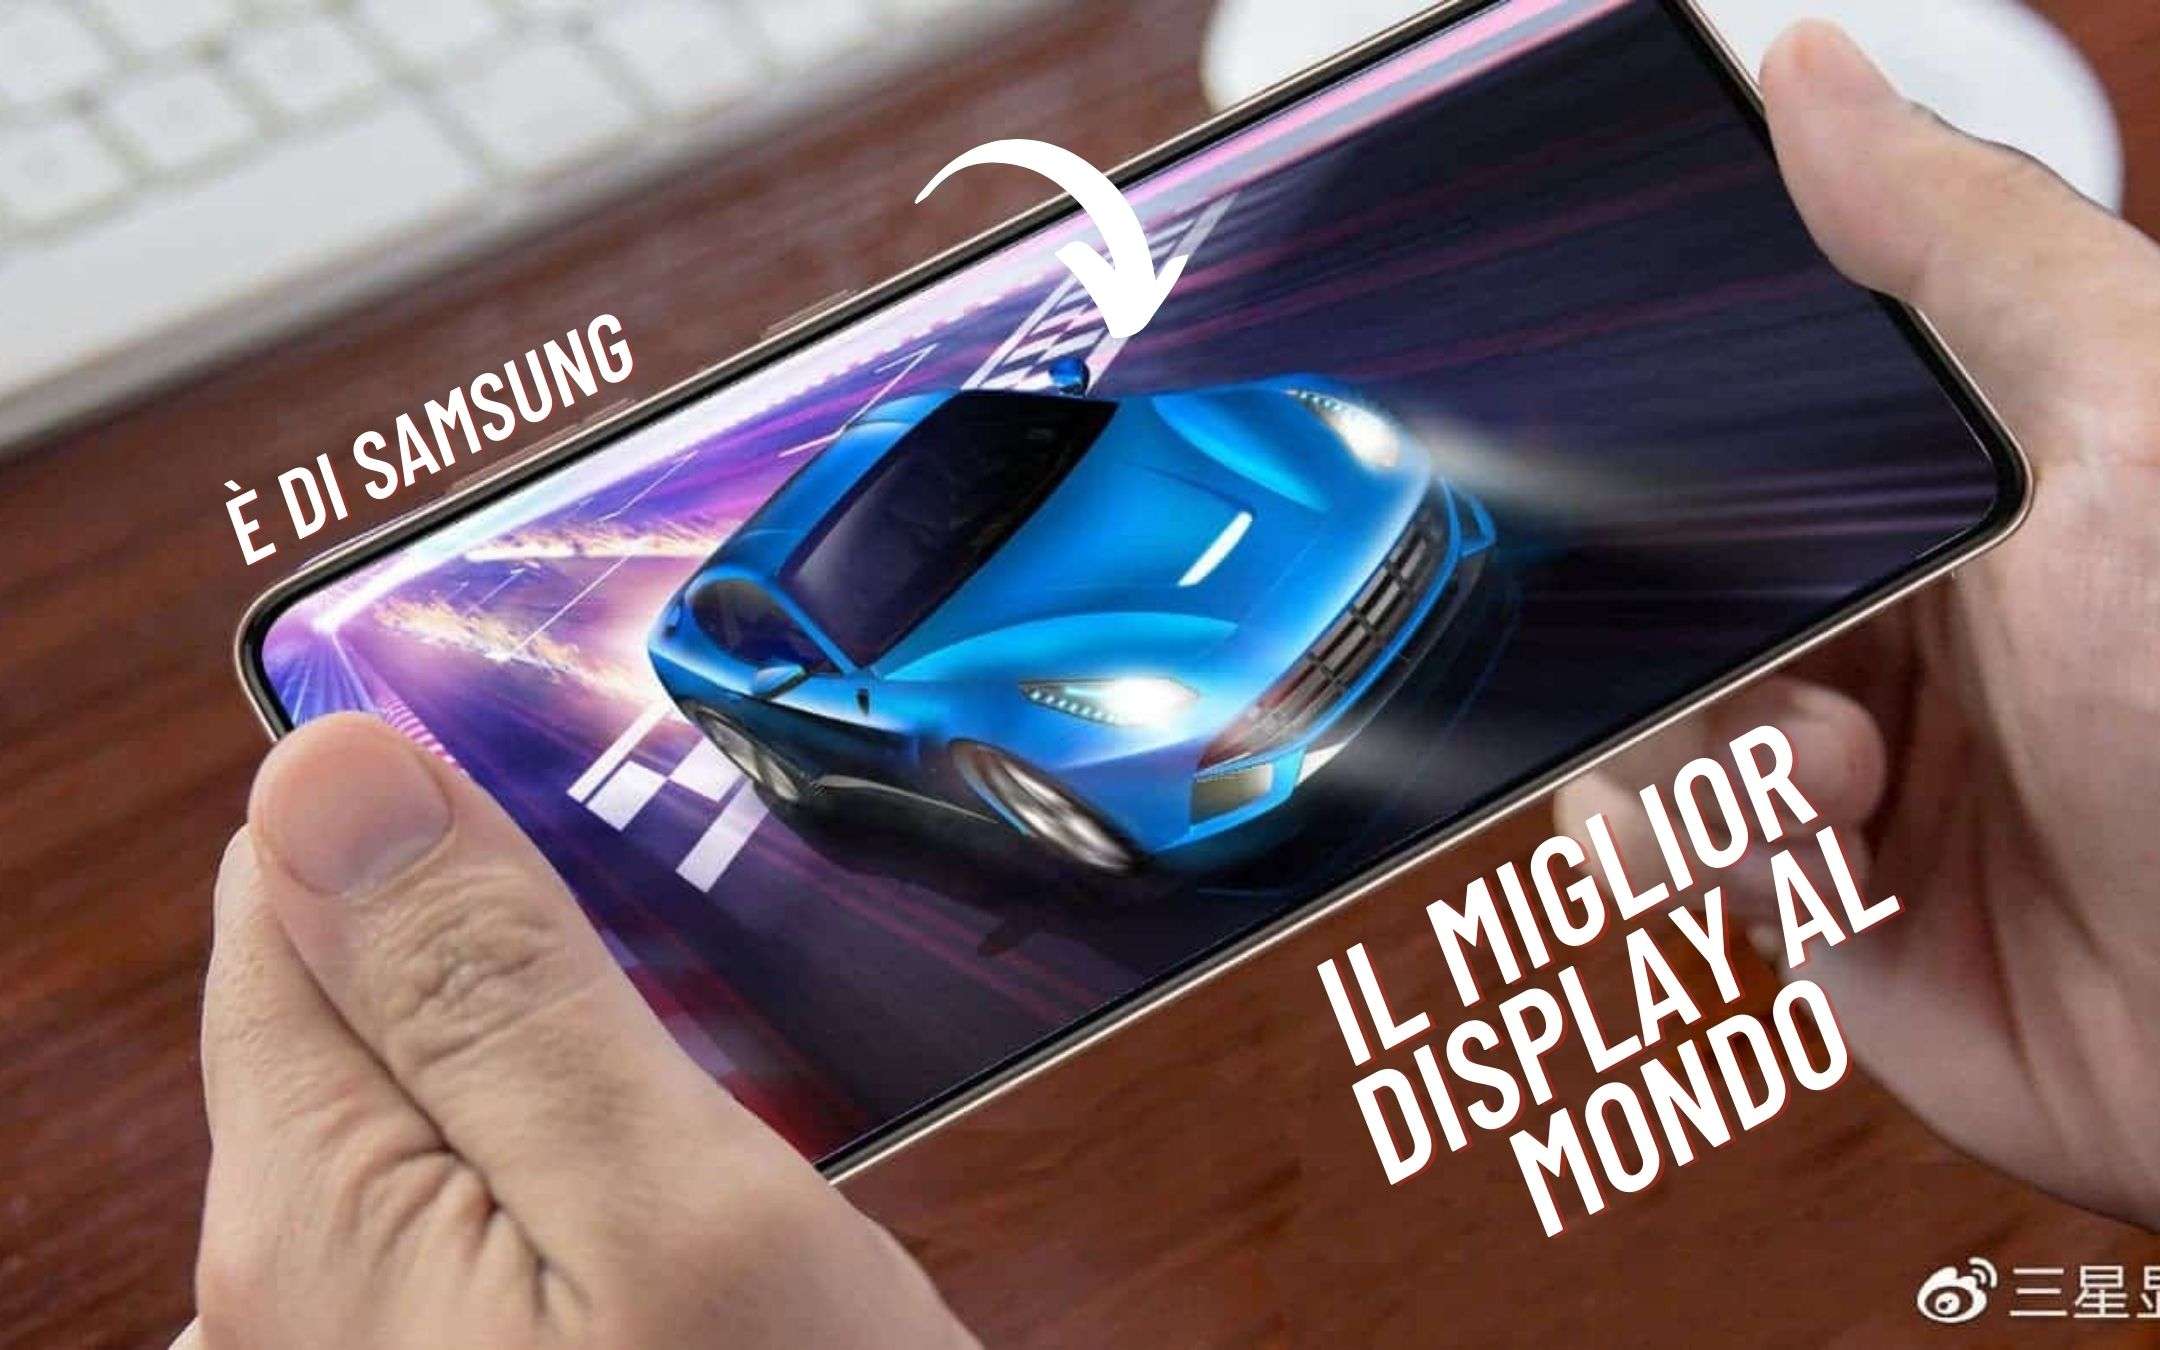 Samsung: ecco il MIGLIOR display gaming al mondo